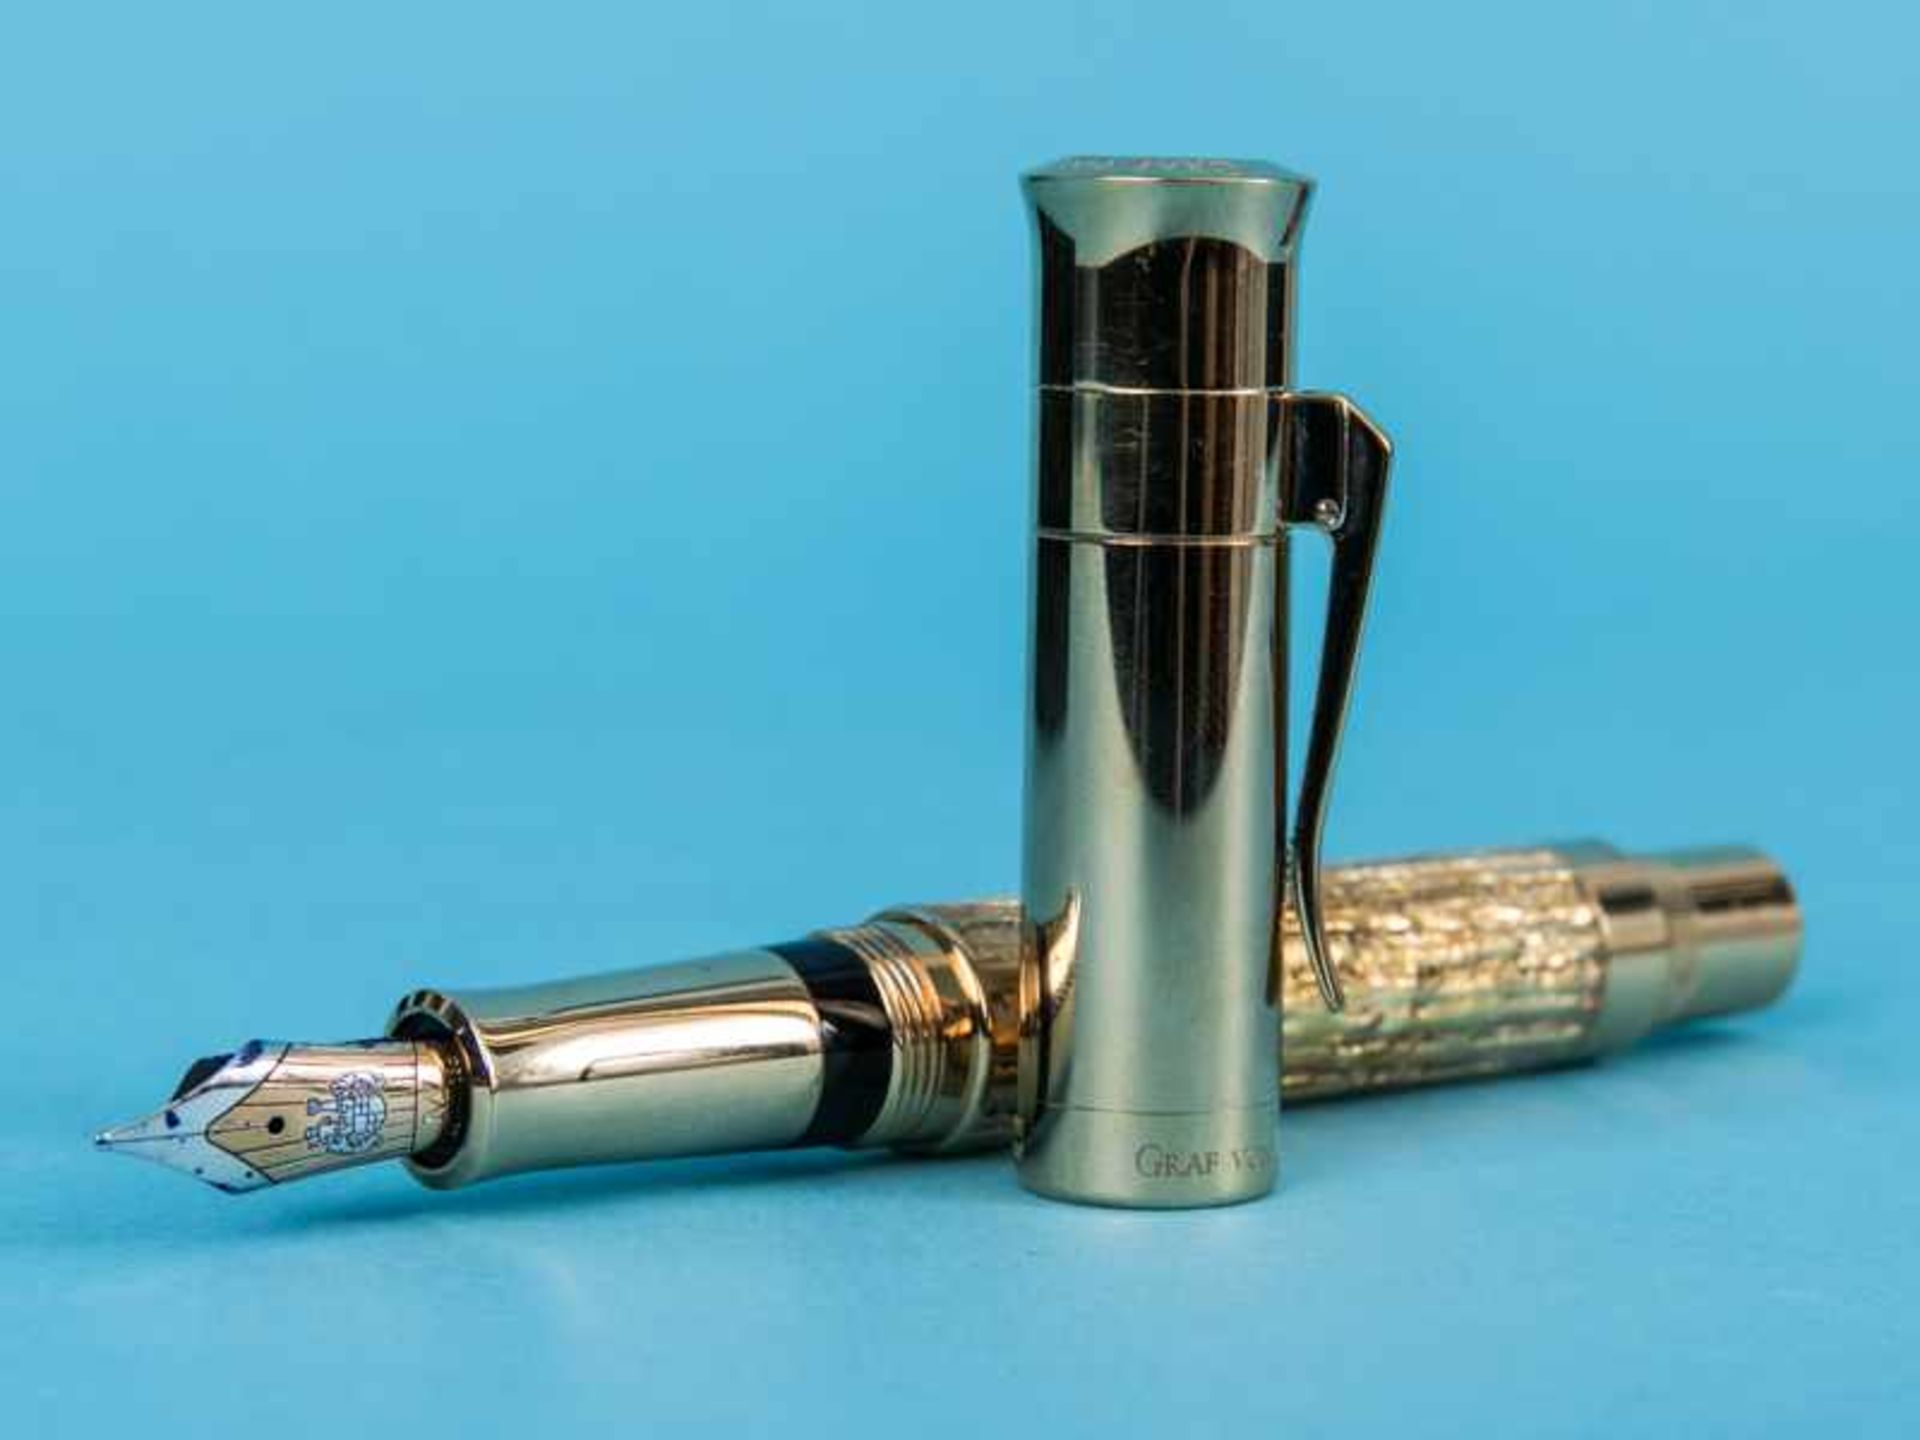 Kolben-Füllfederhalter "Pen of the Year" 2012, Handarbeit aus der Manufaktur Graf von Faber-Castell. - Image 6 of 10